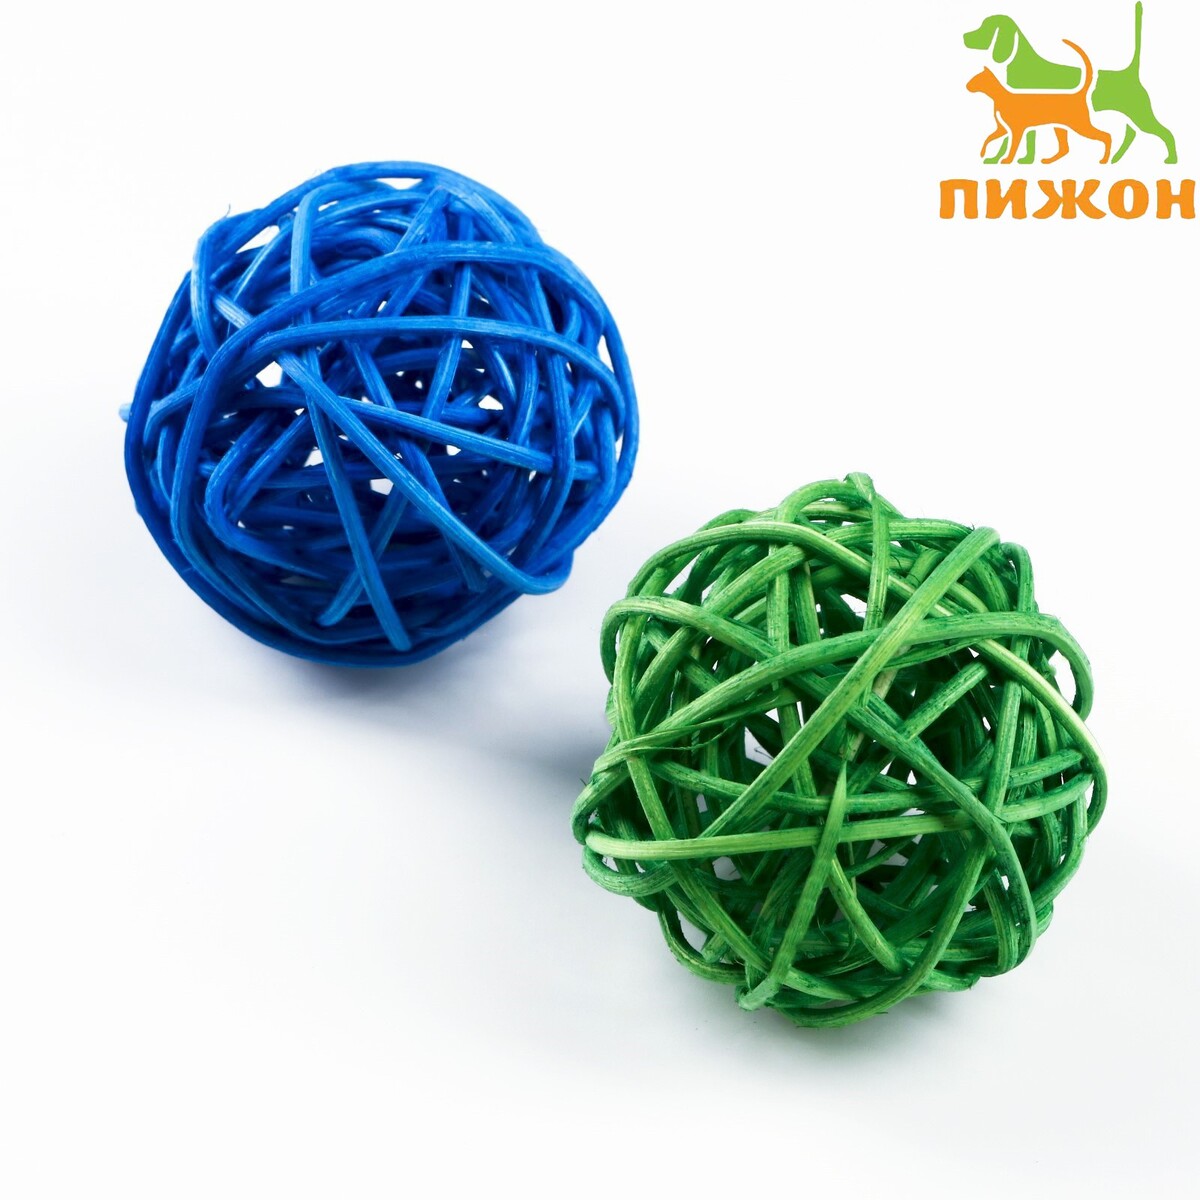 Набор из 2 плетеных шариков из лозы без бубенчиков, 5 см, синий/зеленый набор шариков для аквамозаики